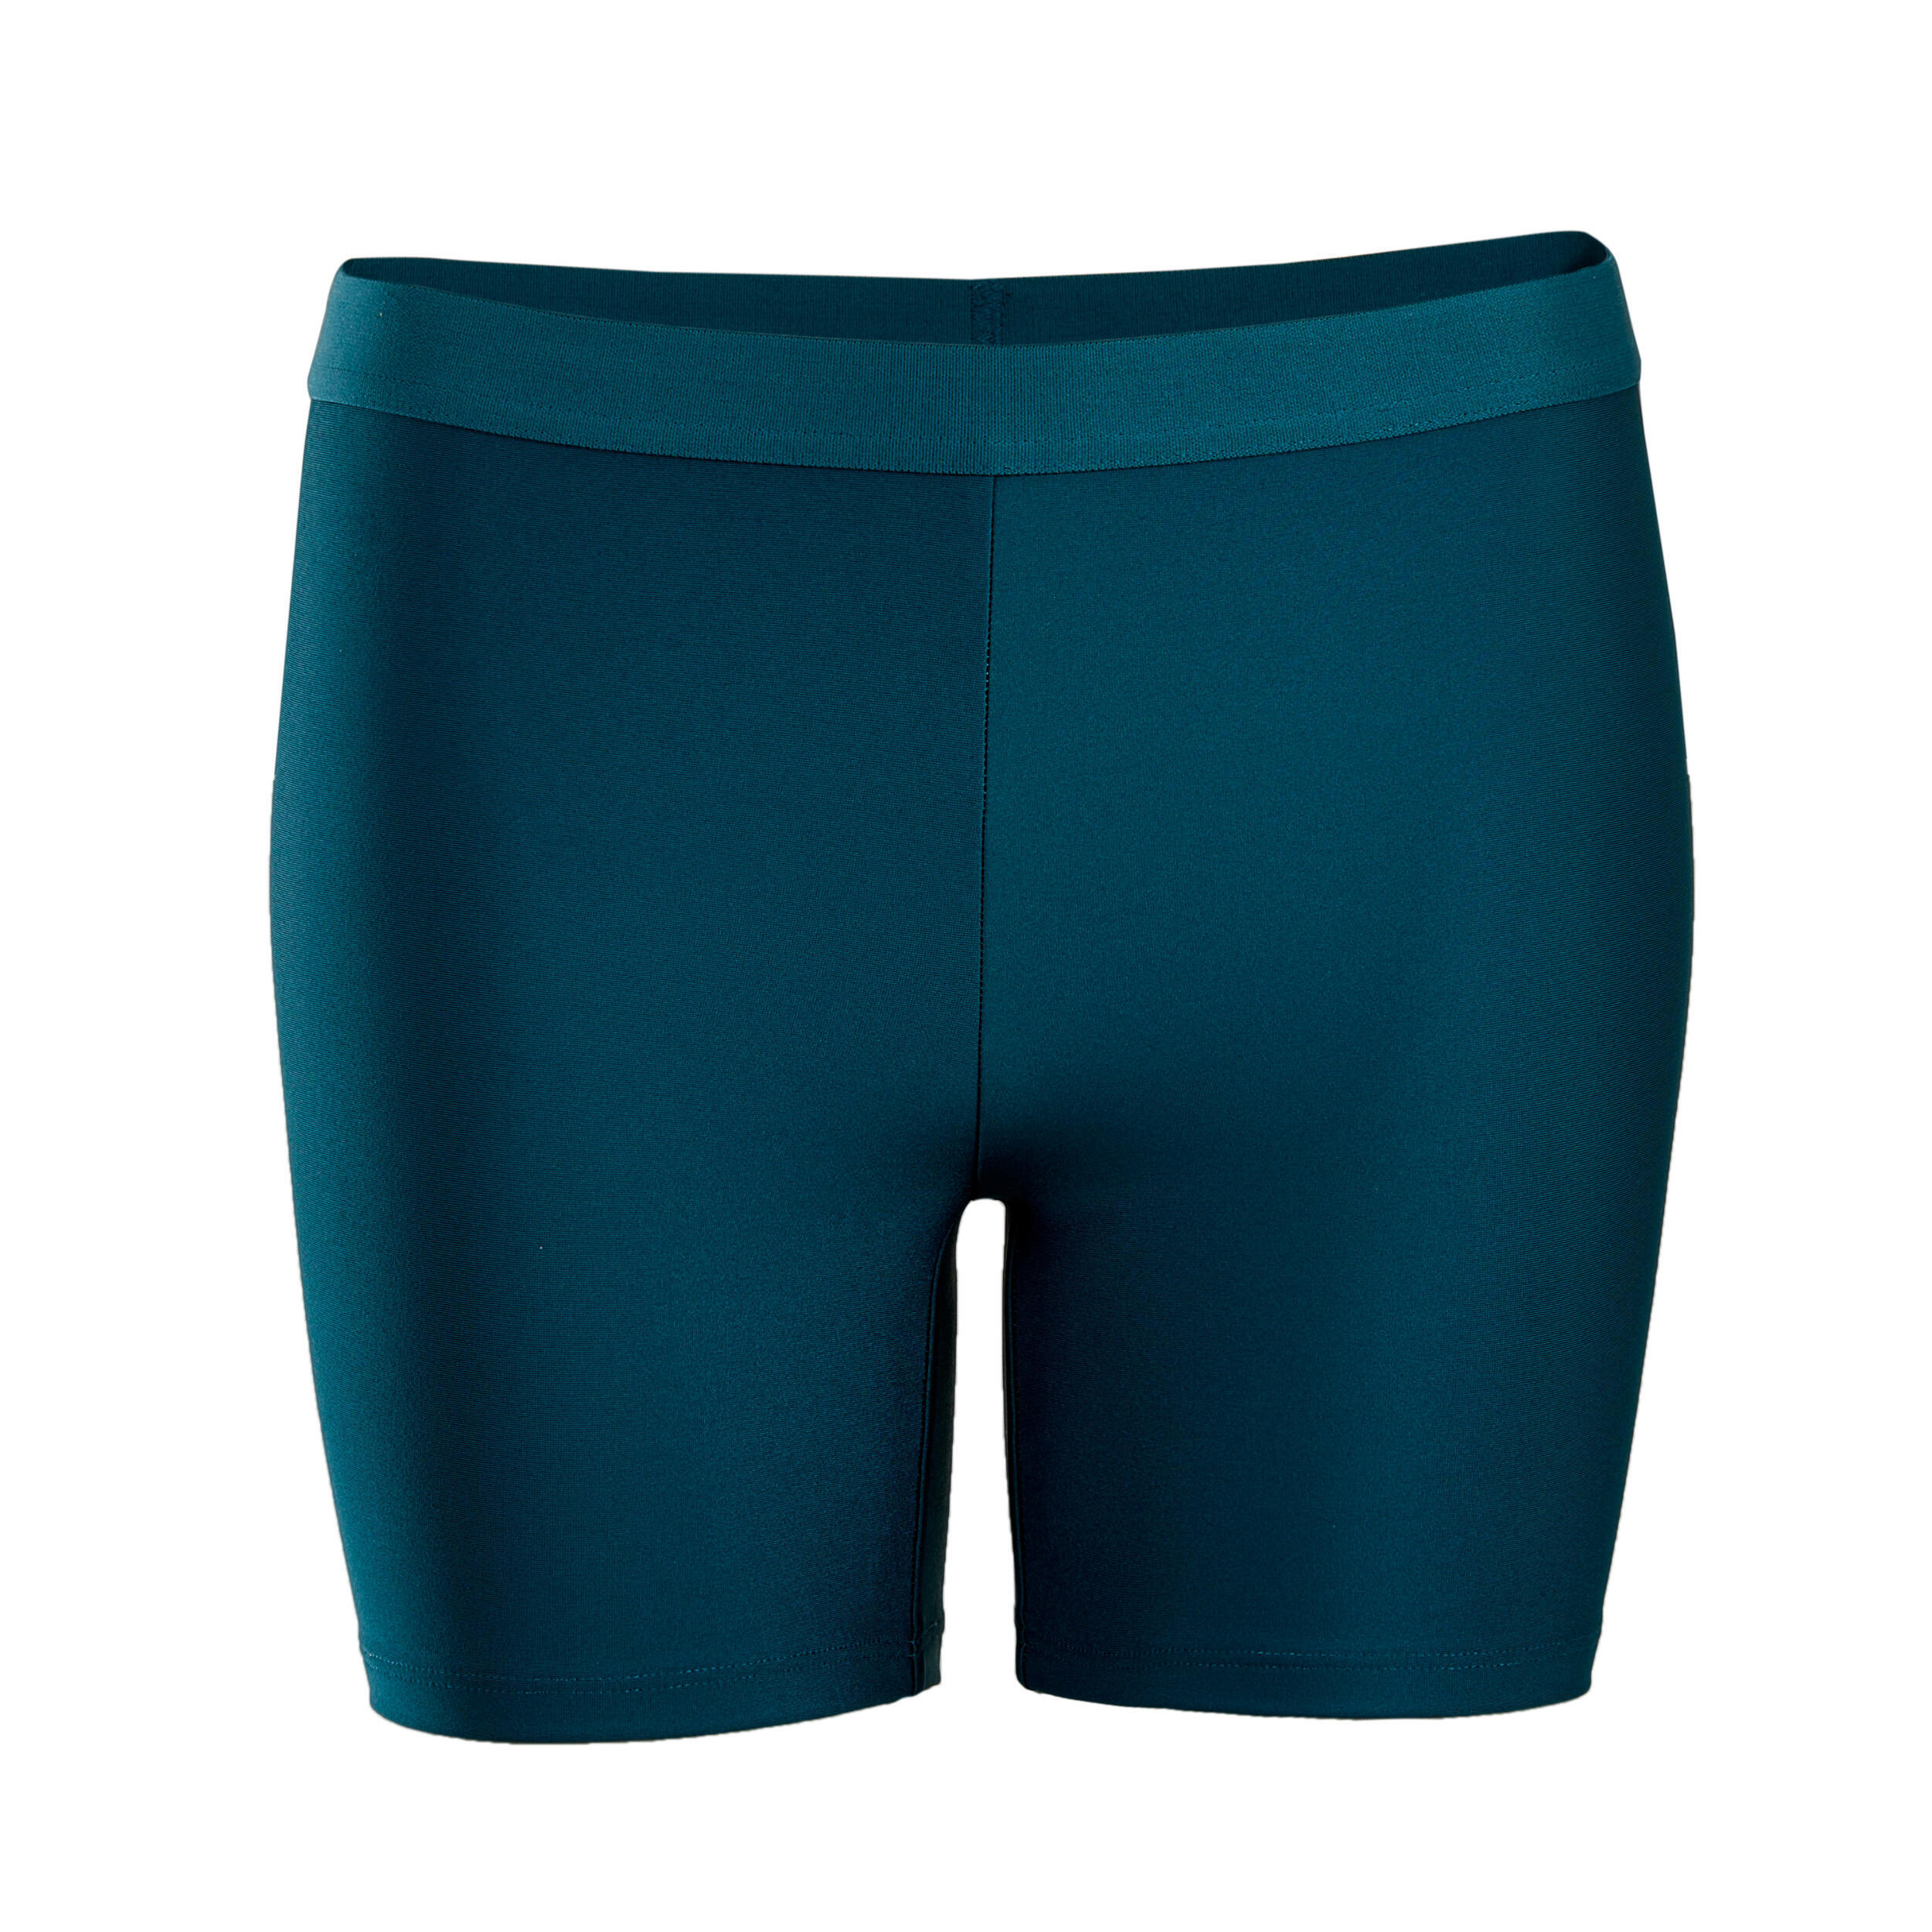 

Теннисные шорты женские - Dry 900 бирюзовый ARTENGO, бирюзовый